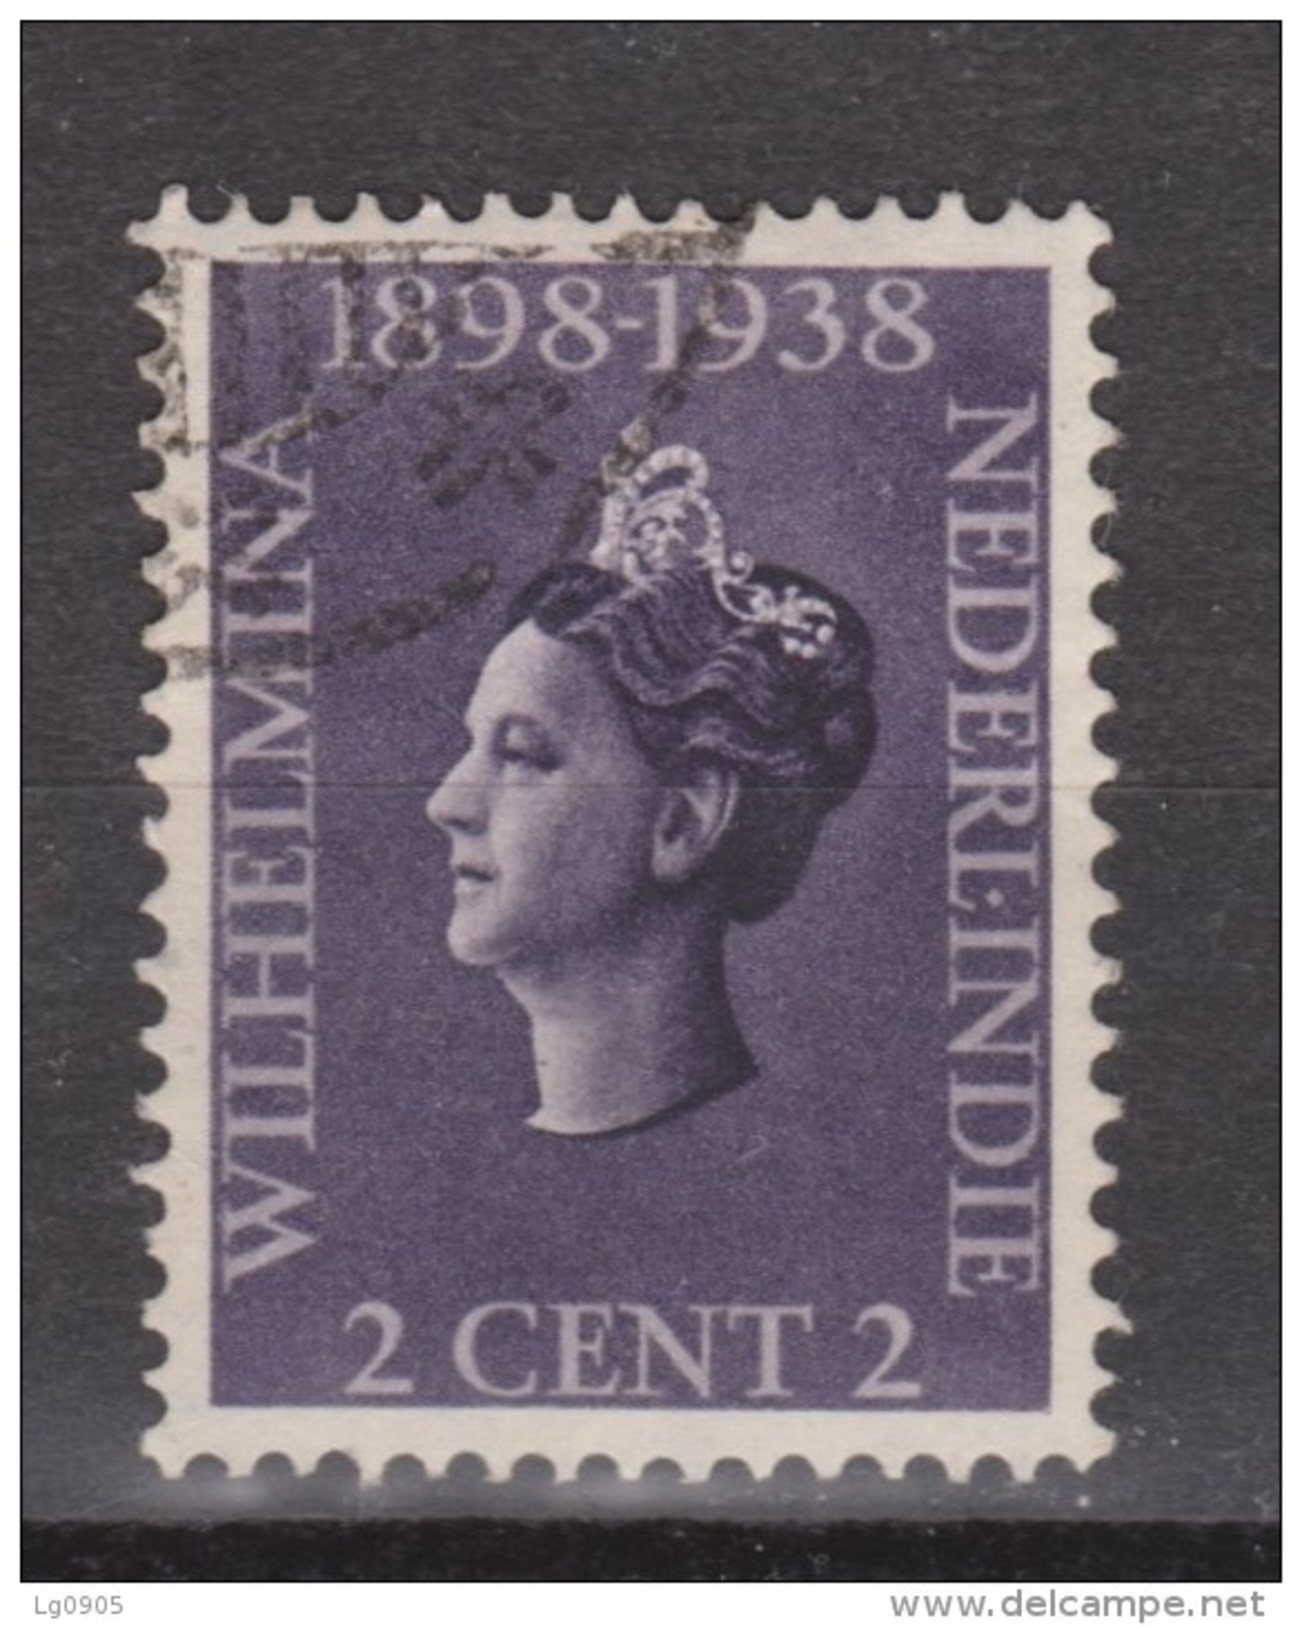 Nederlands Indie 235 Used ; Koningin, Queen, Reine, Reina Wilhelmina 1938 Netherlands Indies PER PIECE - Niederländisch-Indien